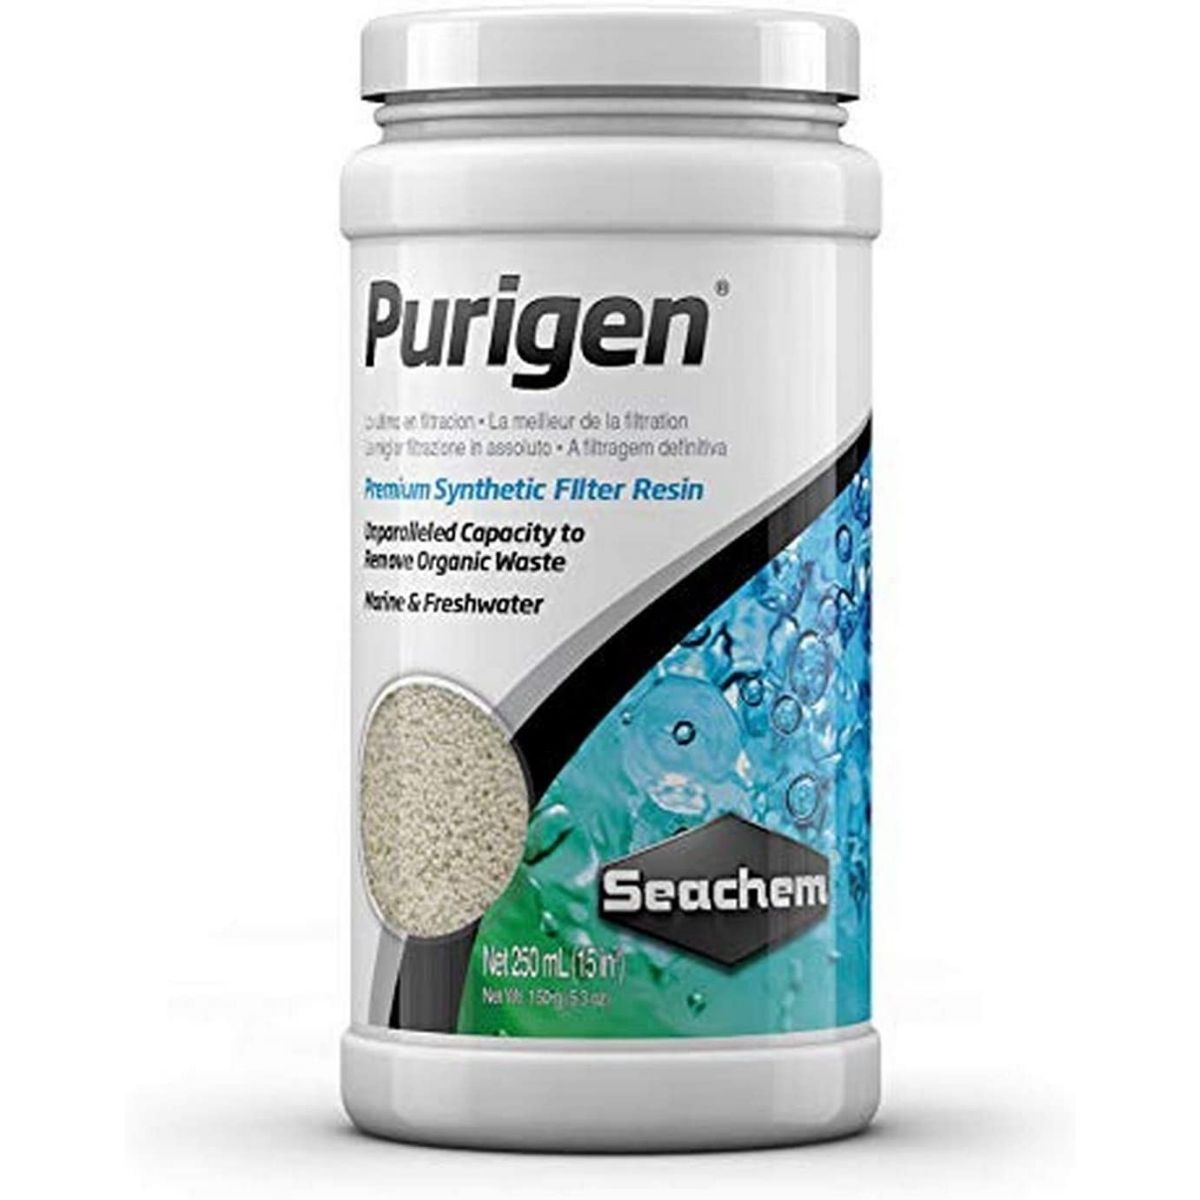 seachem purigen 250ml filter media review